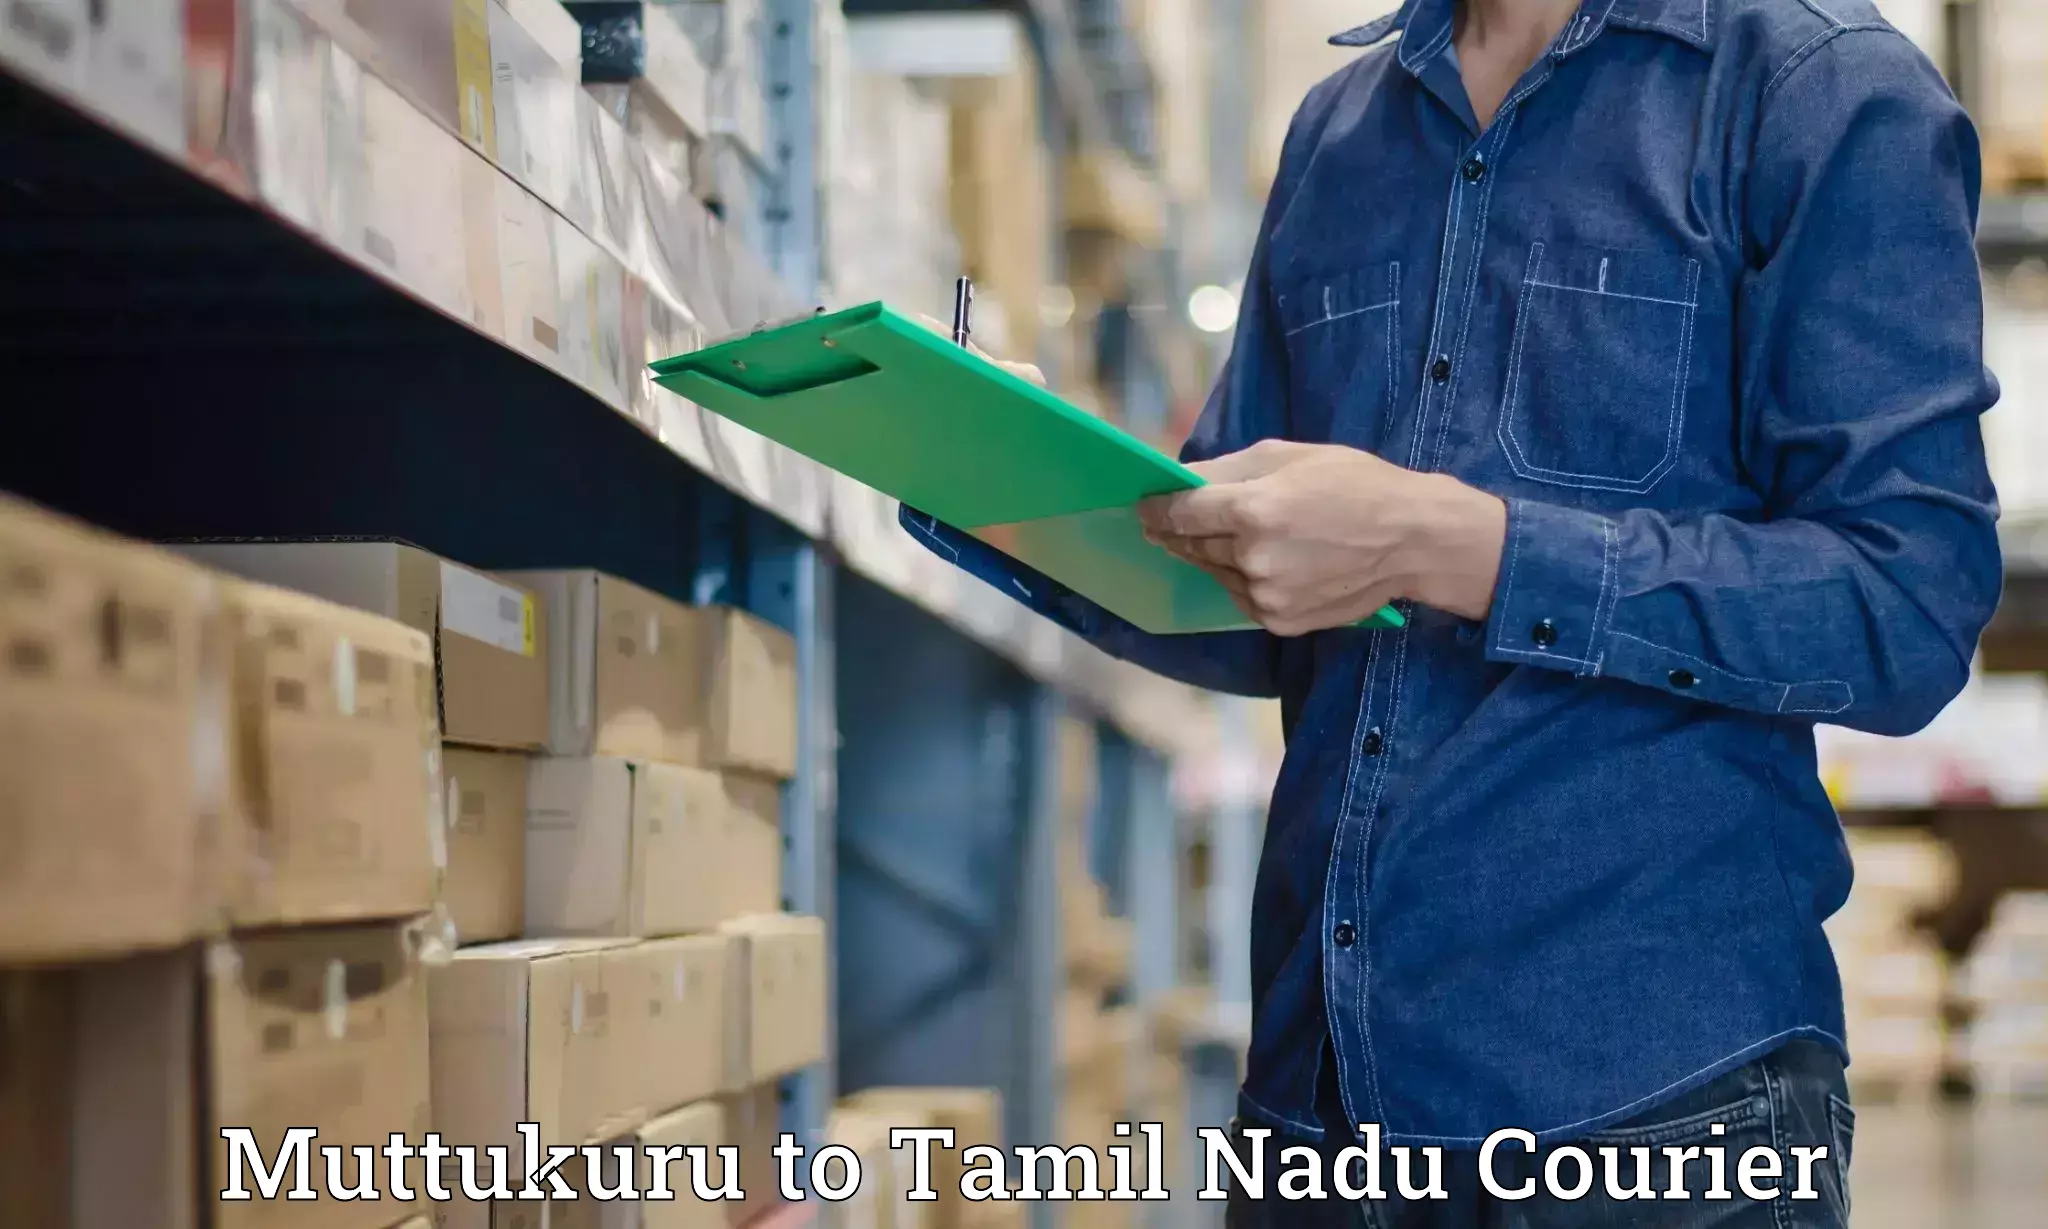 Ground shipping in Muttukuru to Tamil Nadu